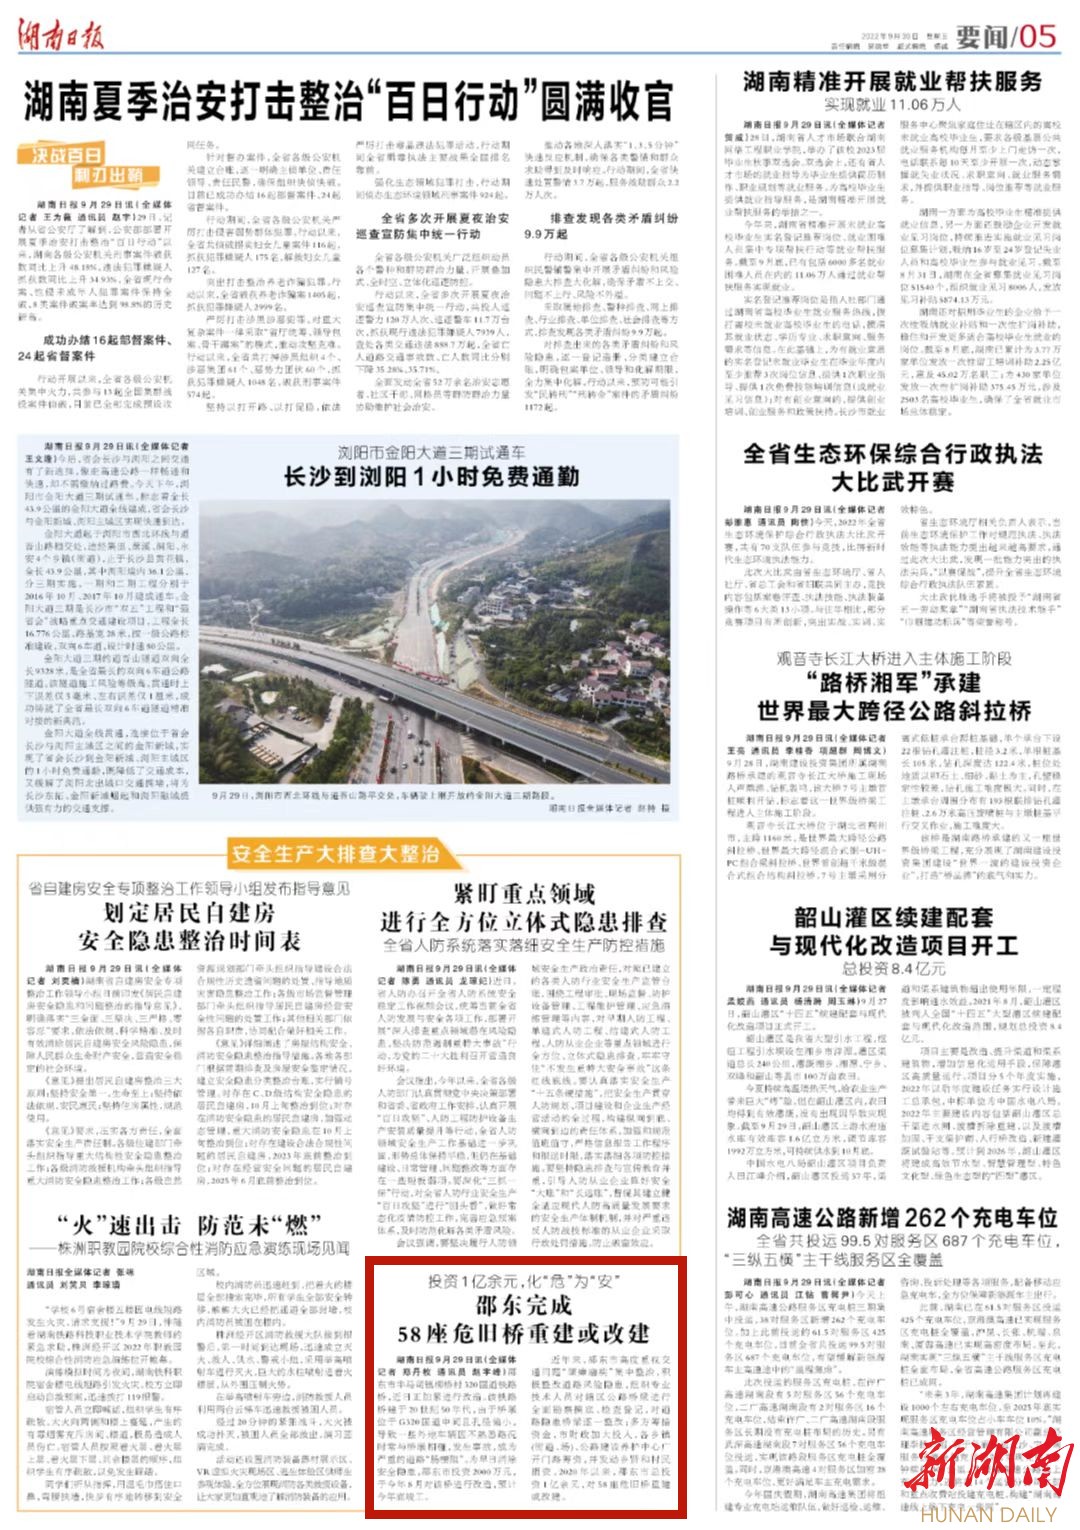 投资1亿余元，化“危”为“安” 邵东完成58座危旧桥重建或改建